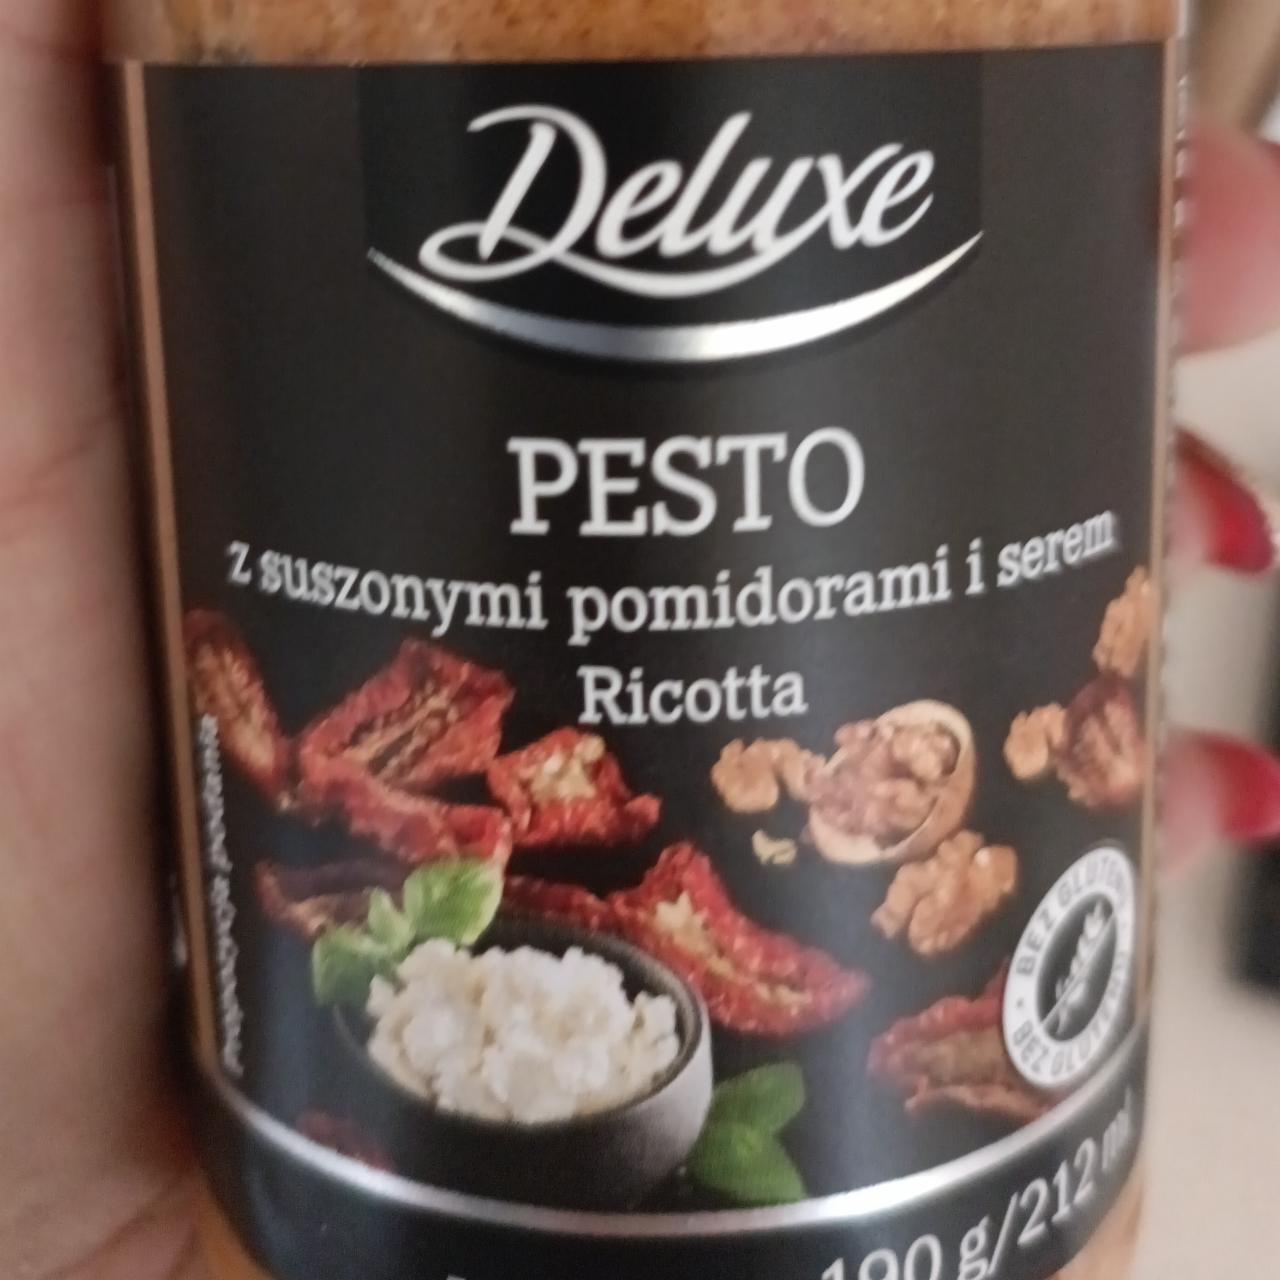 Zdjęcia - Pesto z suszonymi pomidorami i serem Ricotta Deluxe